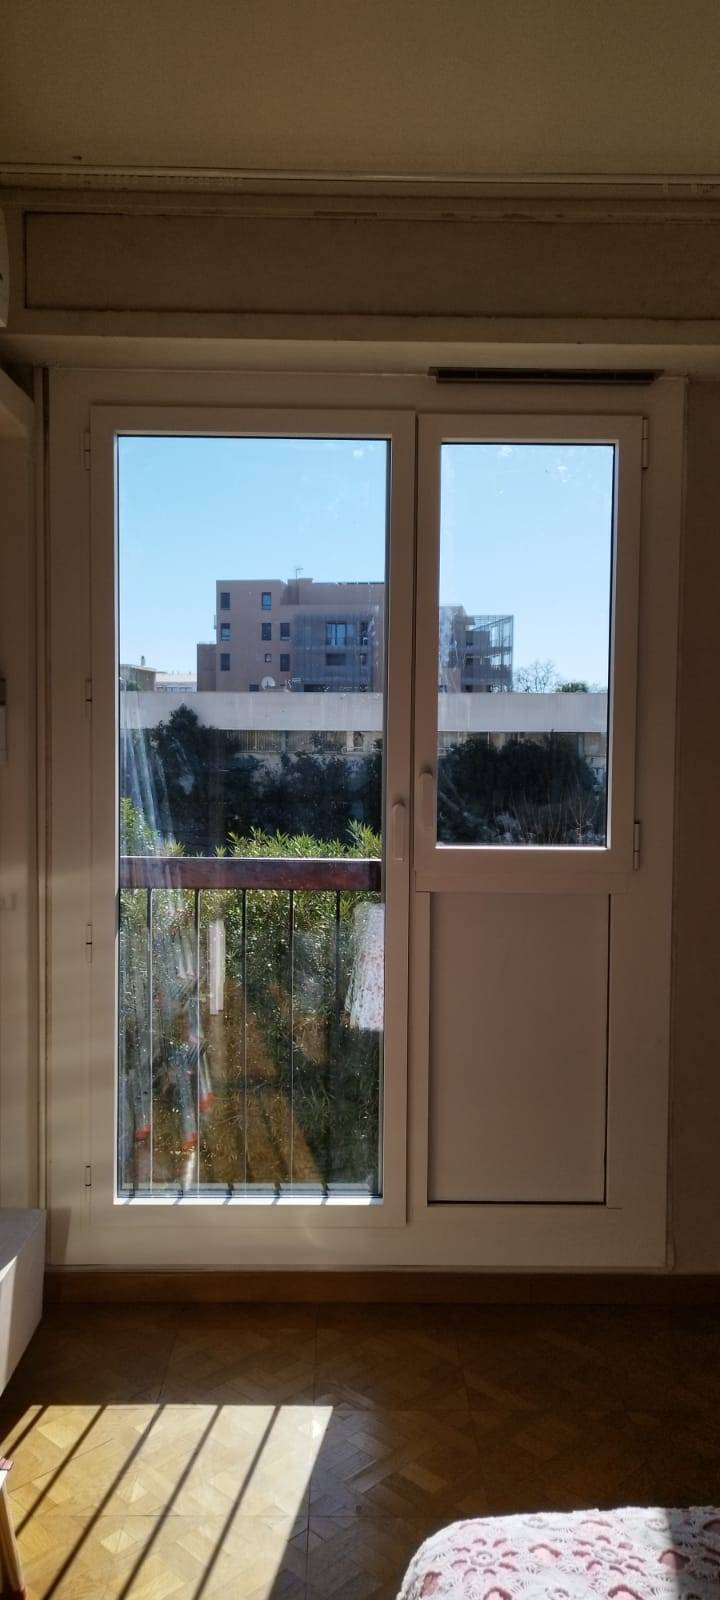 Rénovation d'une fenêtre en alu bicolore, intérieur blanc et extérieur marron